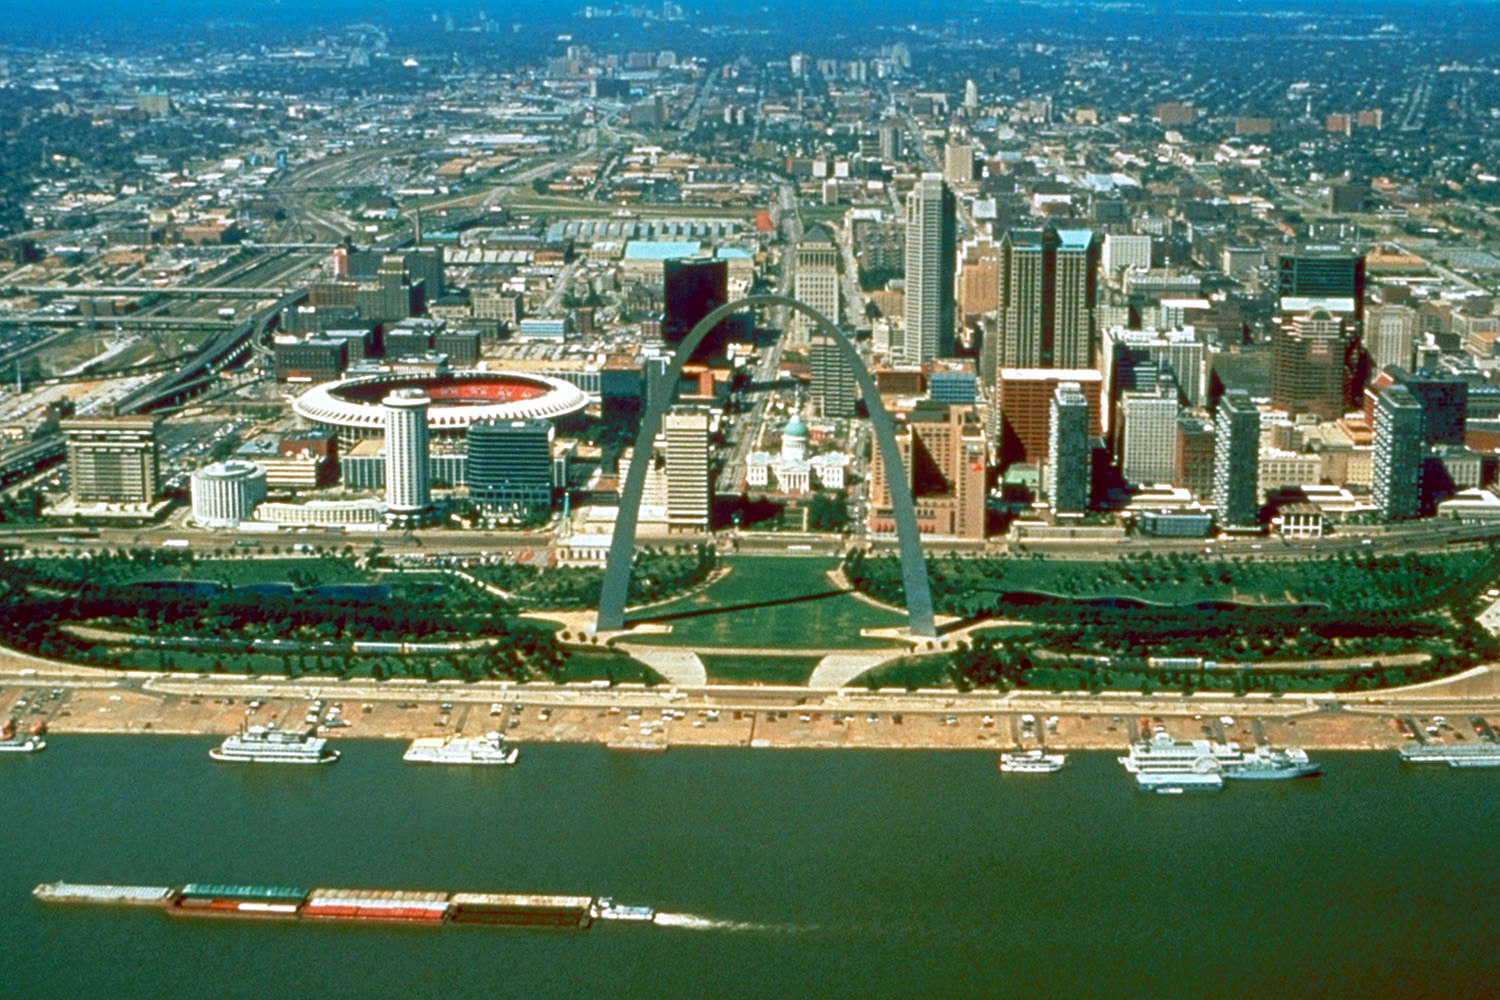 St Louis Missouri skyline over arch, 1994